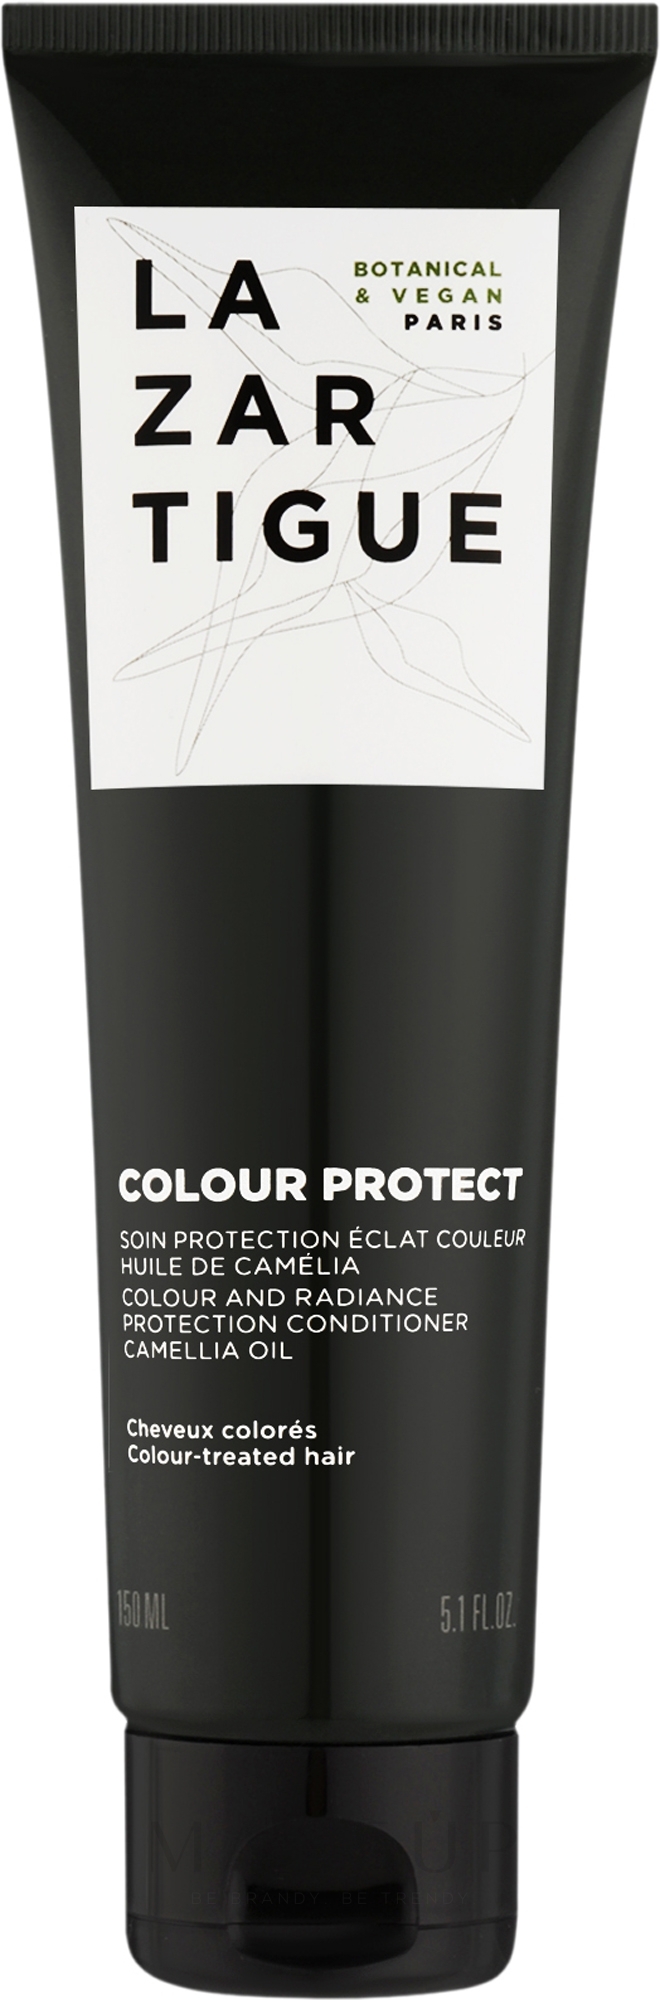 Conditioner für das Haar - Lazartigue Colour Protect Colour and Radiance Protection Conditioner — Bild 150 ml